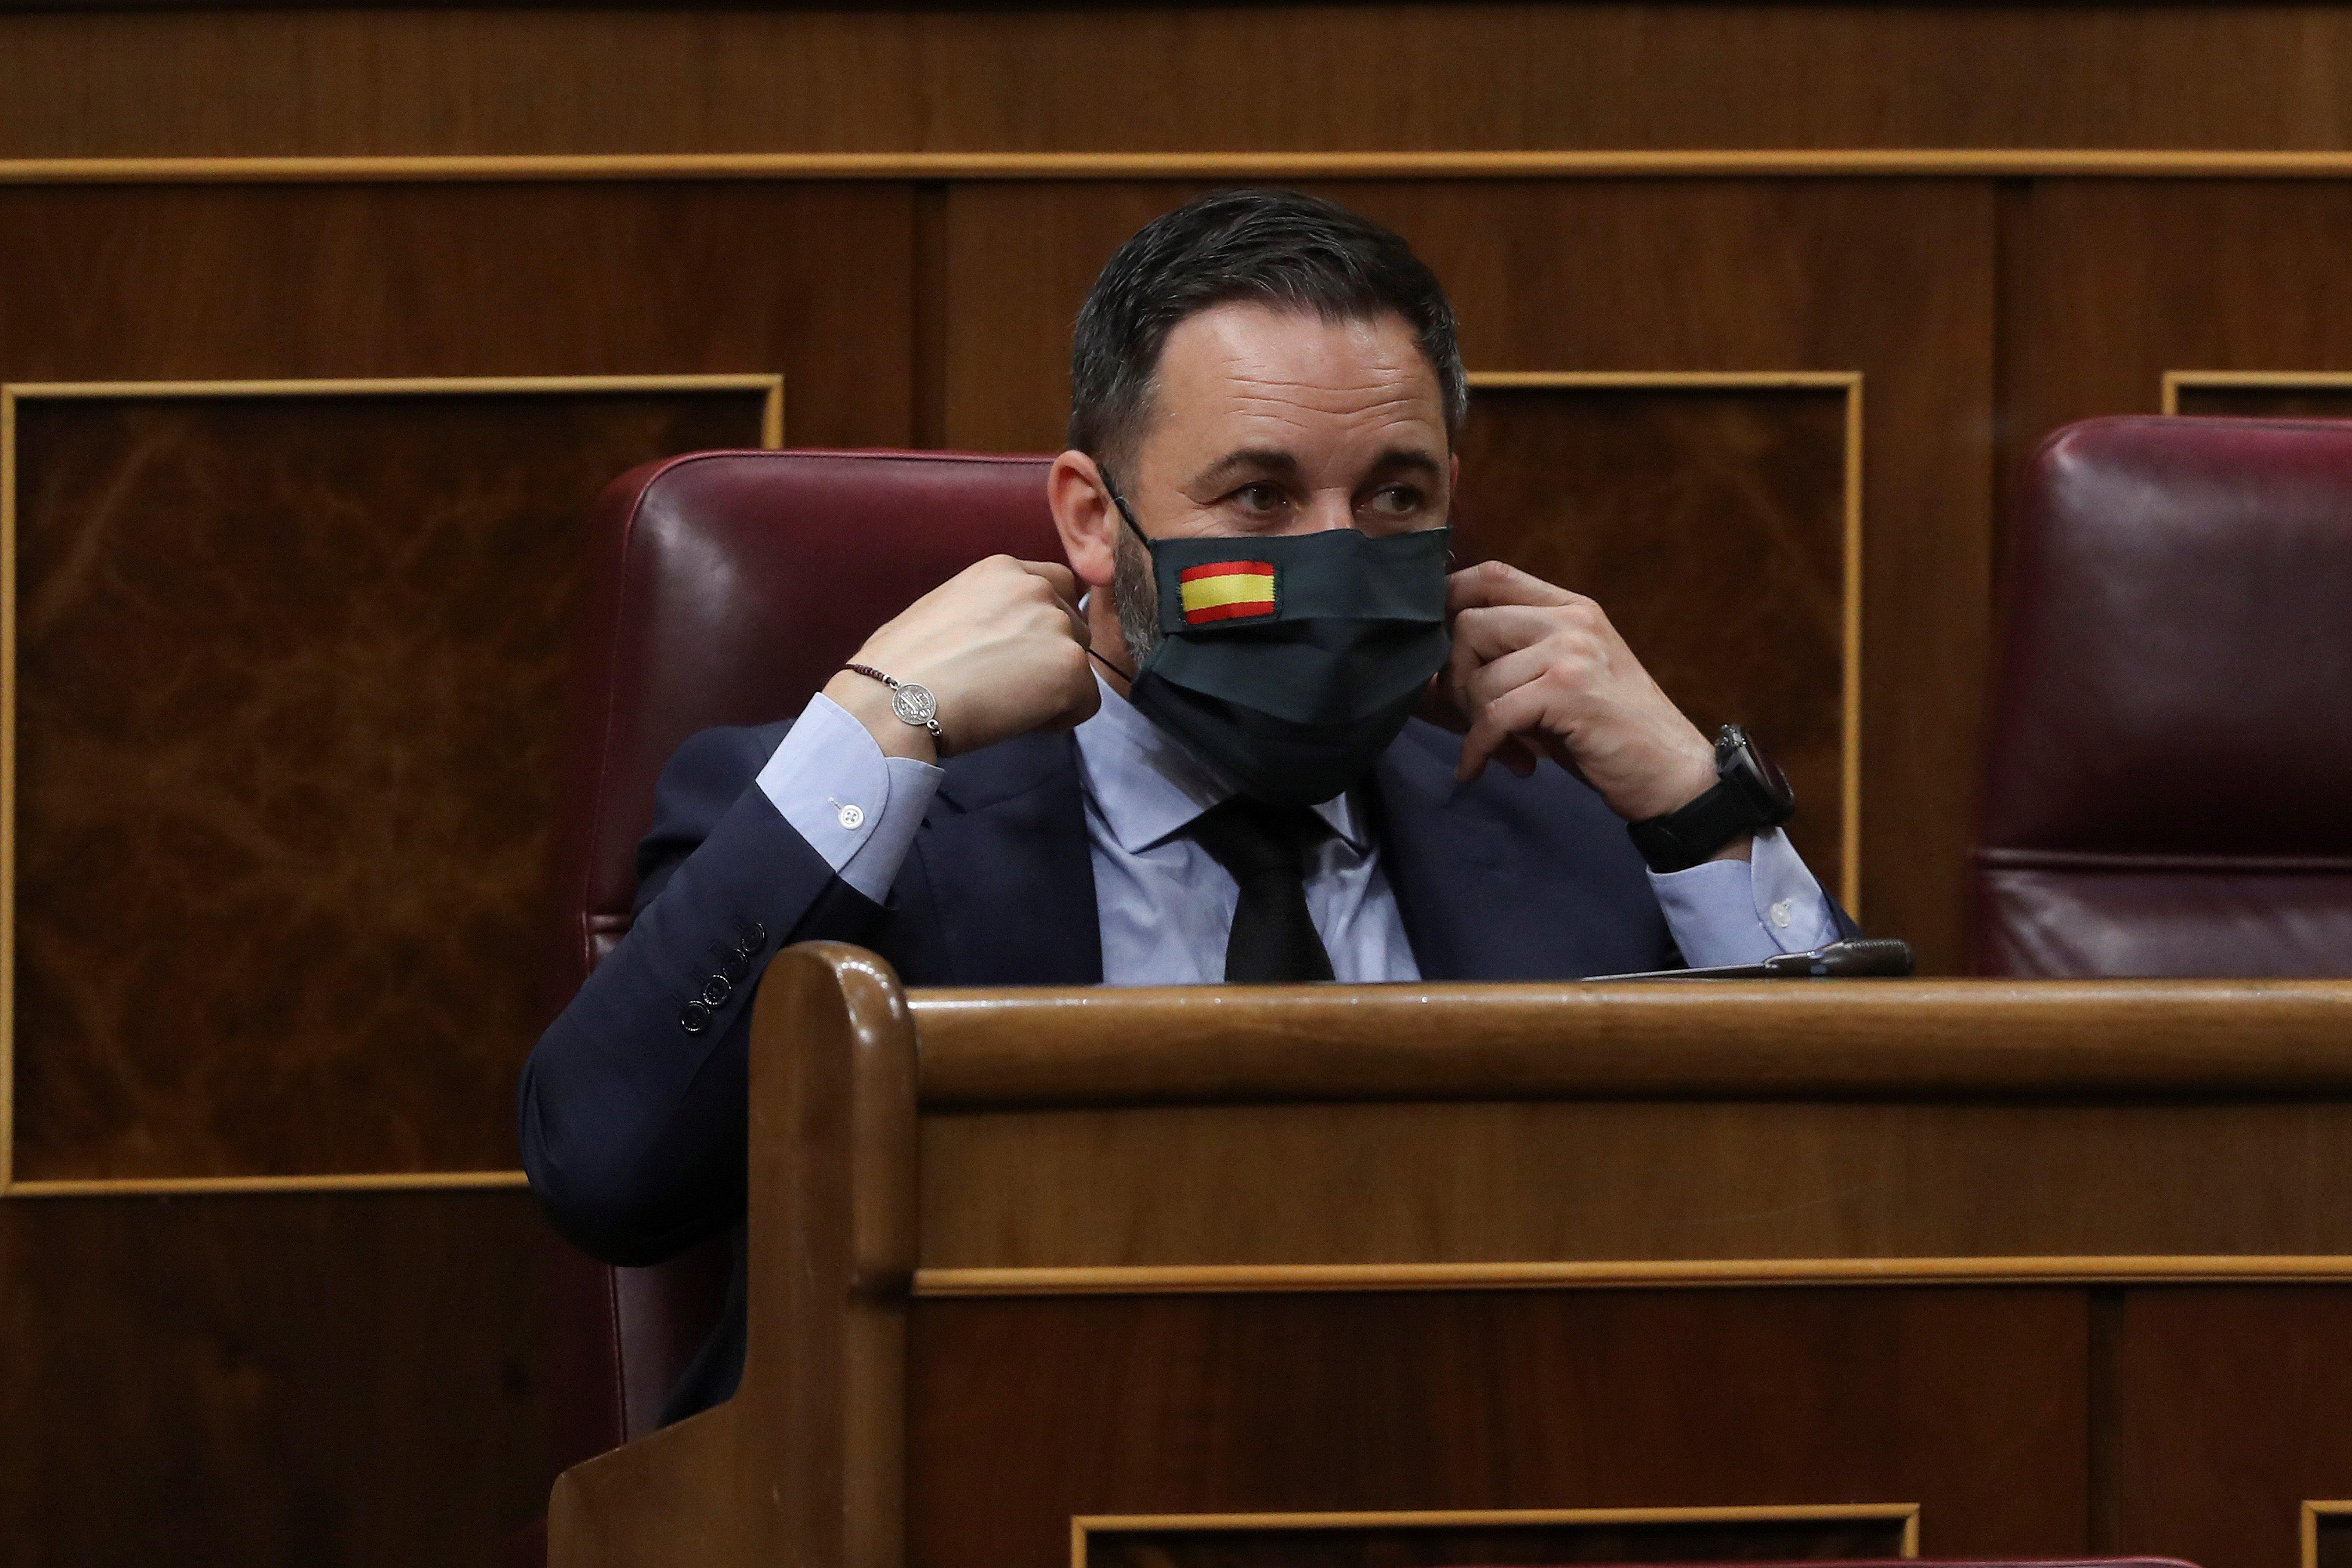 El presidente de Vox, Santiago Abascal, en el Congreso poniéndose su mascarilla personalizada con la bandera de España. Fuente: EP.